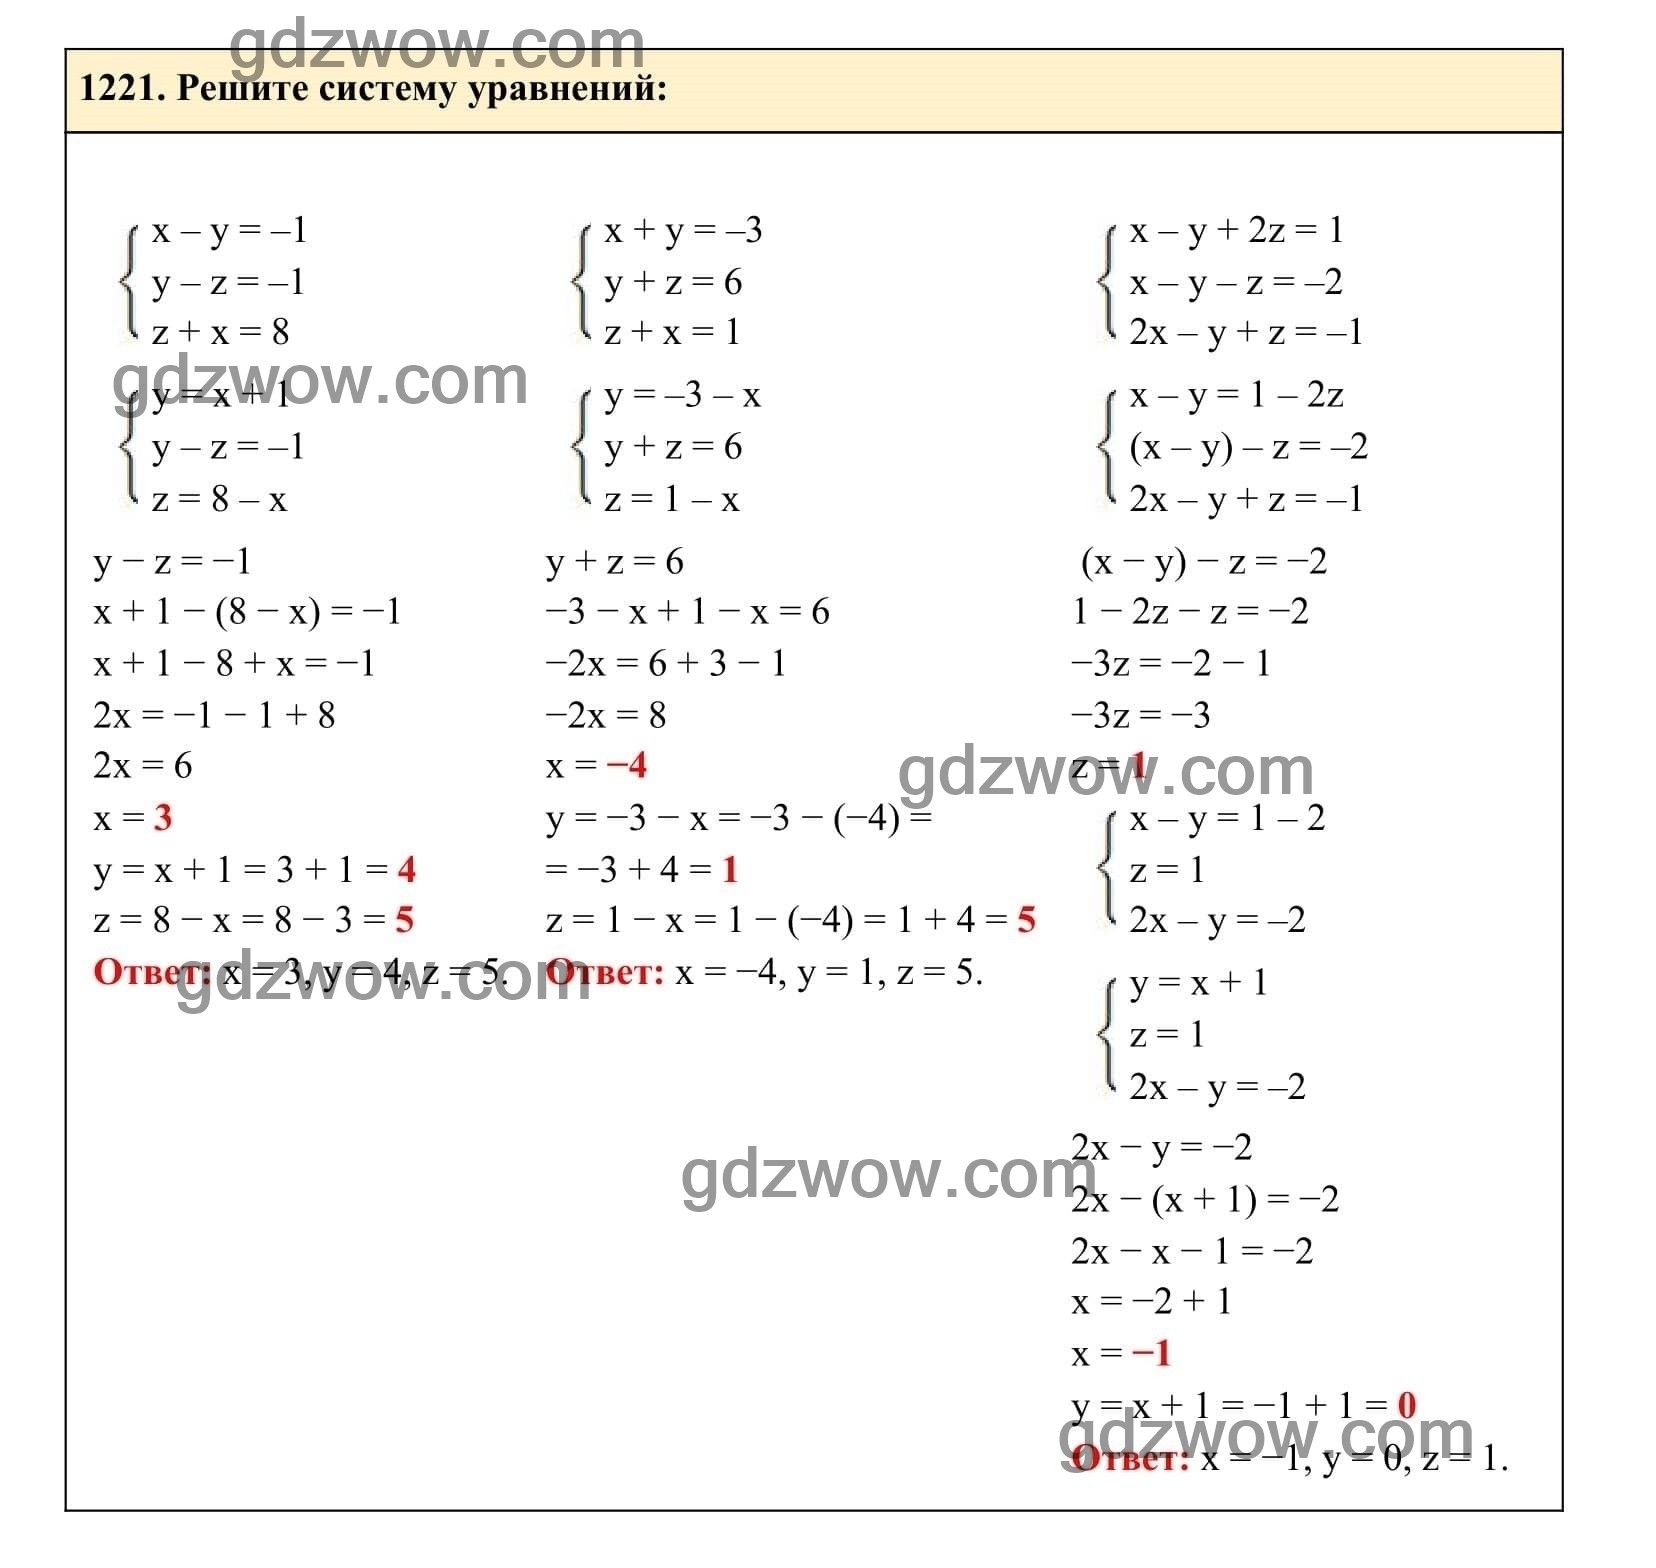 Упражнение 1221 - ГДЗ по Алгебре 7 класс Учебник Макарычев (решебник) - GDZwow